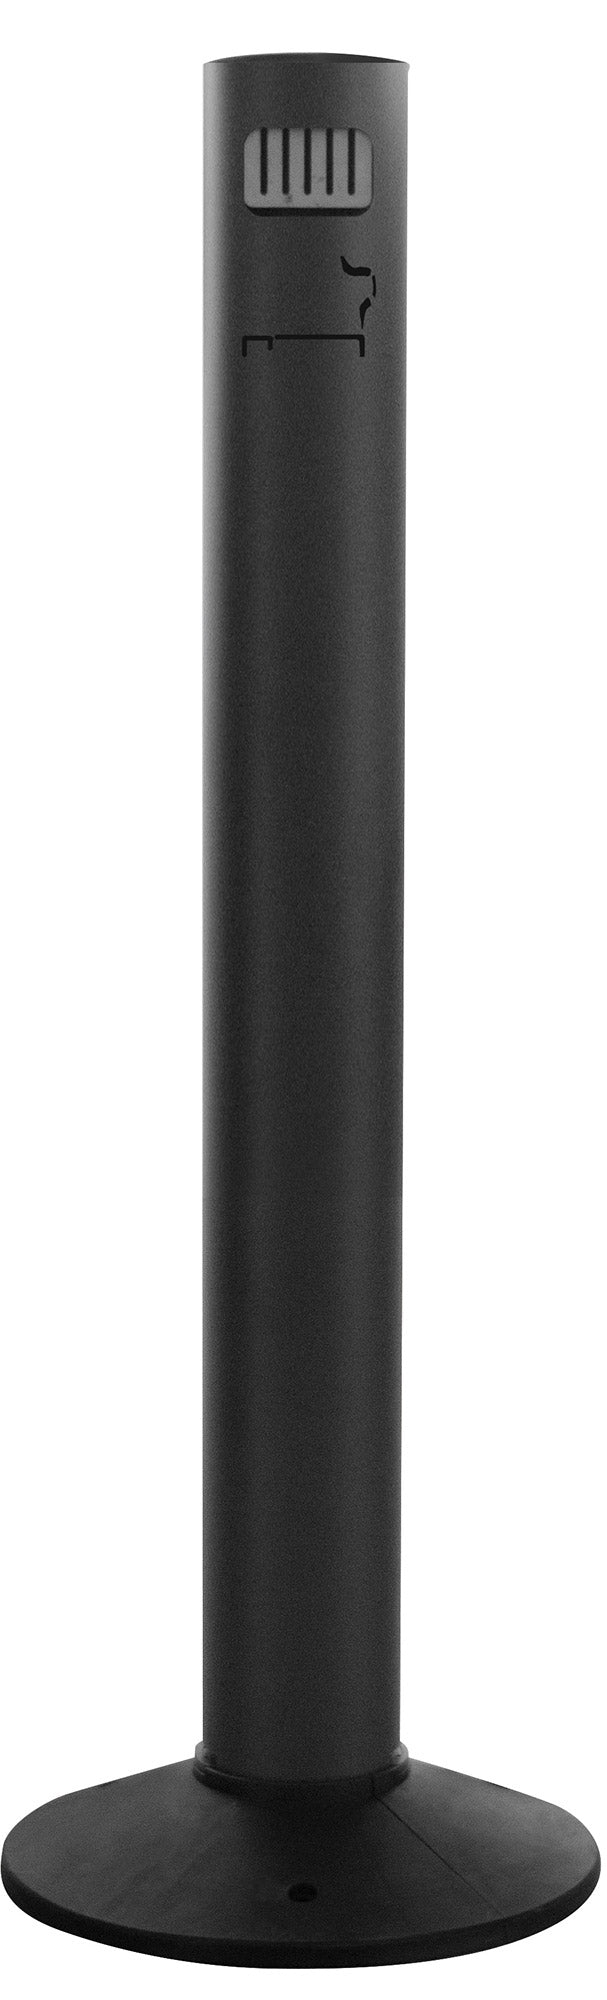 Posacenere a Colonna Ø 11,5/33,5x102 cm in Alluminio Verniciato con Contenitore Interno  Nero-1